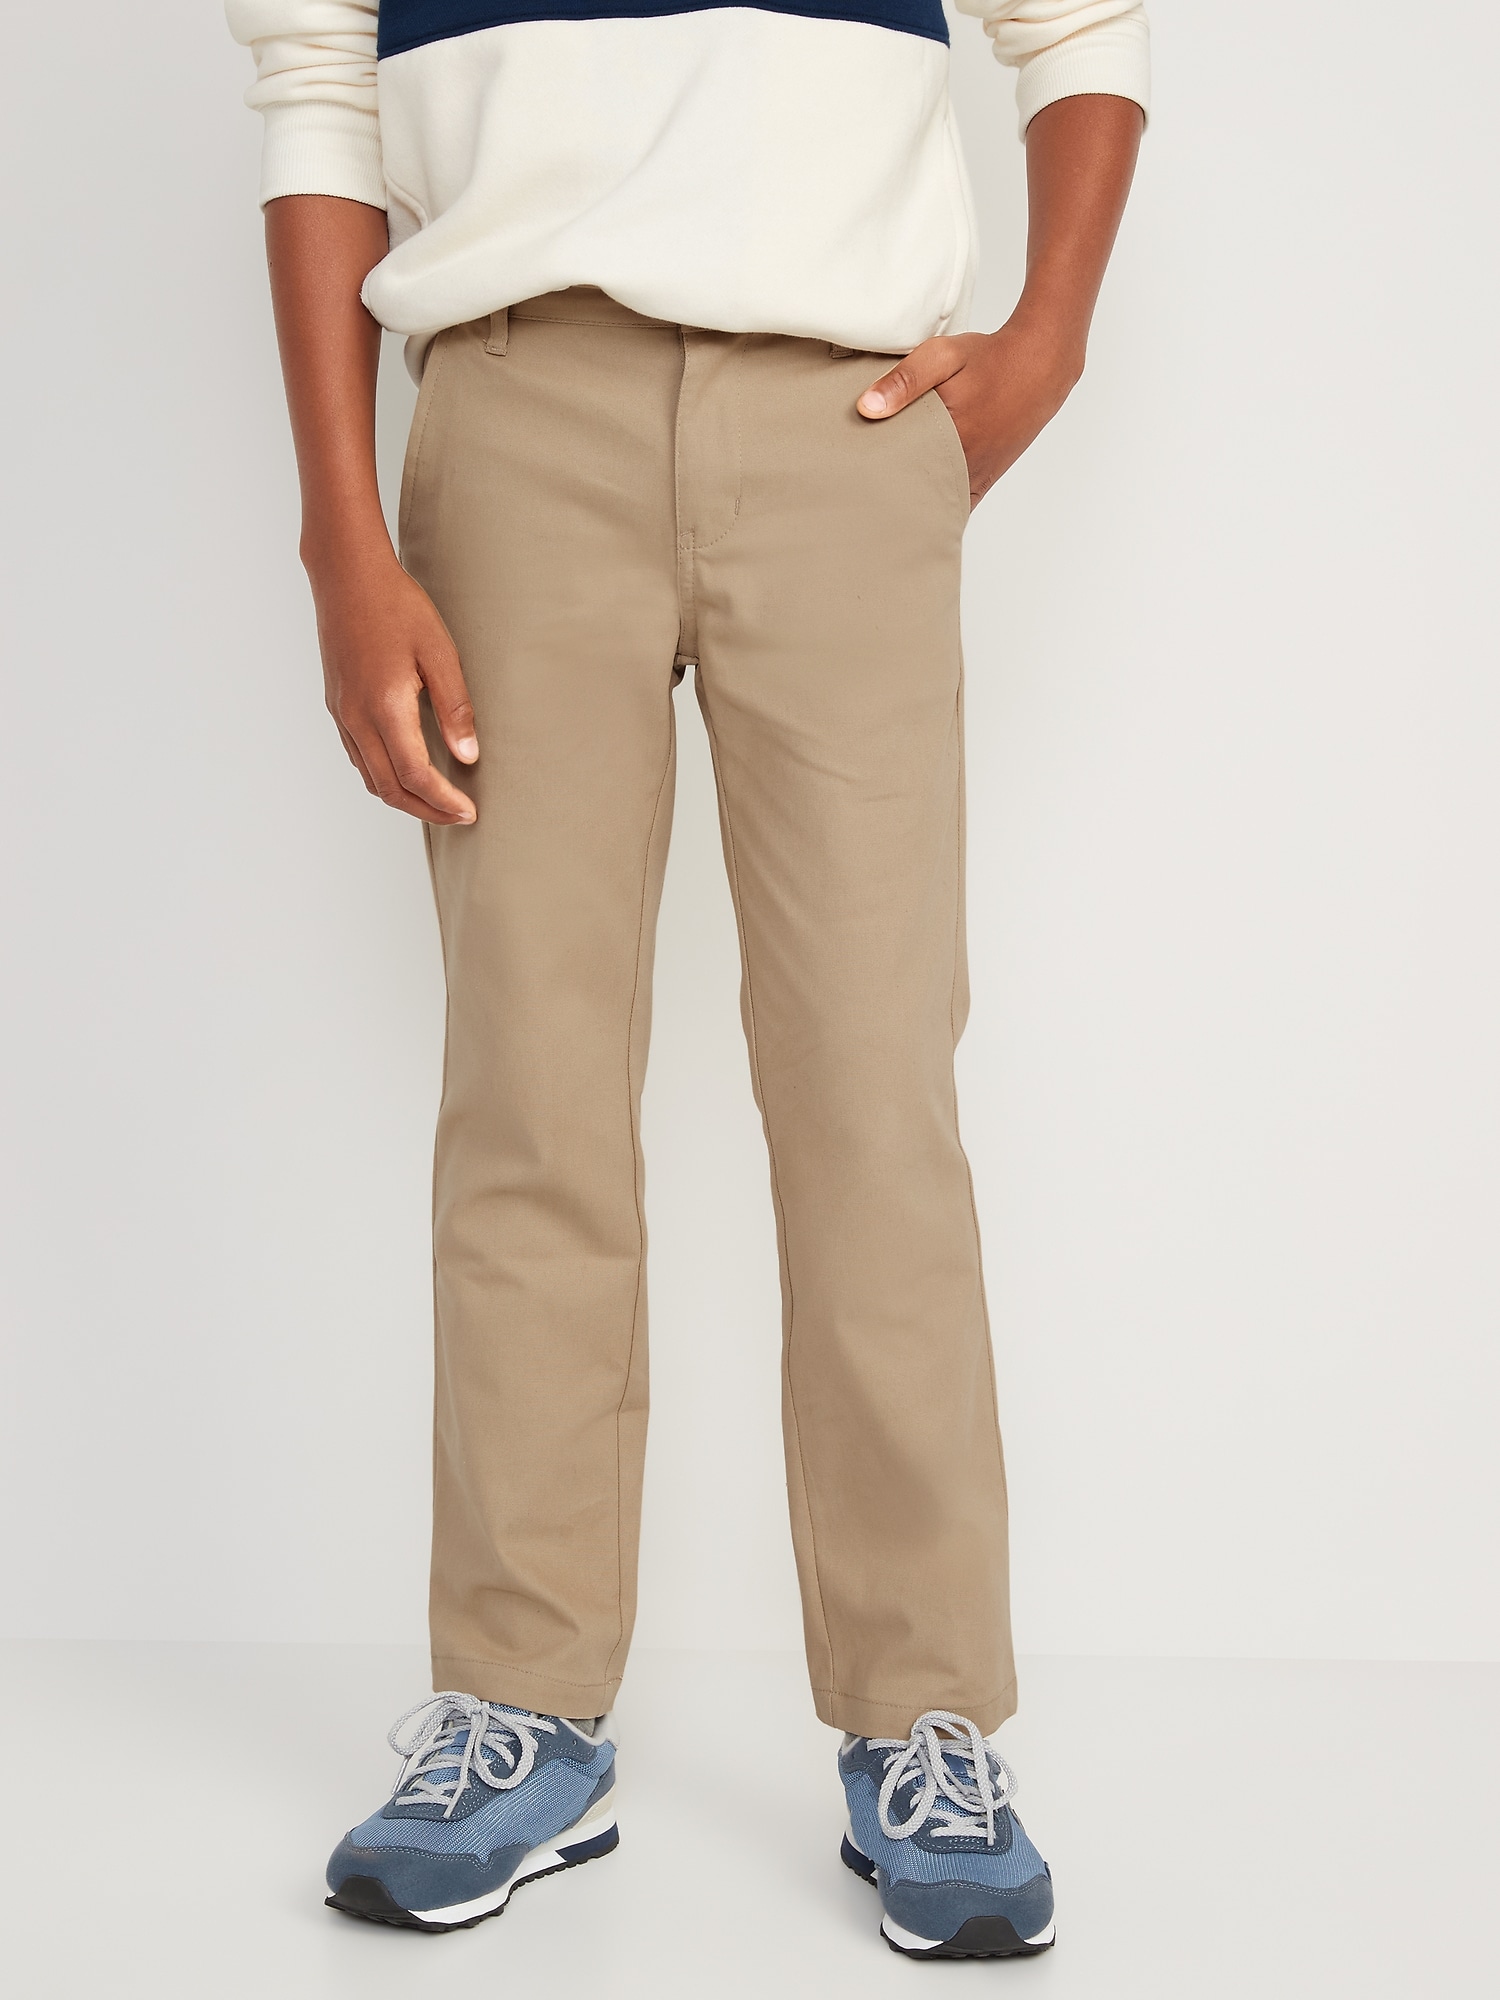 Lands End School Uniform Boys Dress Pants Gray Size 18 /Inseam 29 1/2”  #LE2AC | eBay